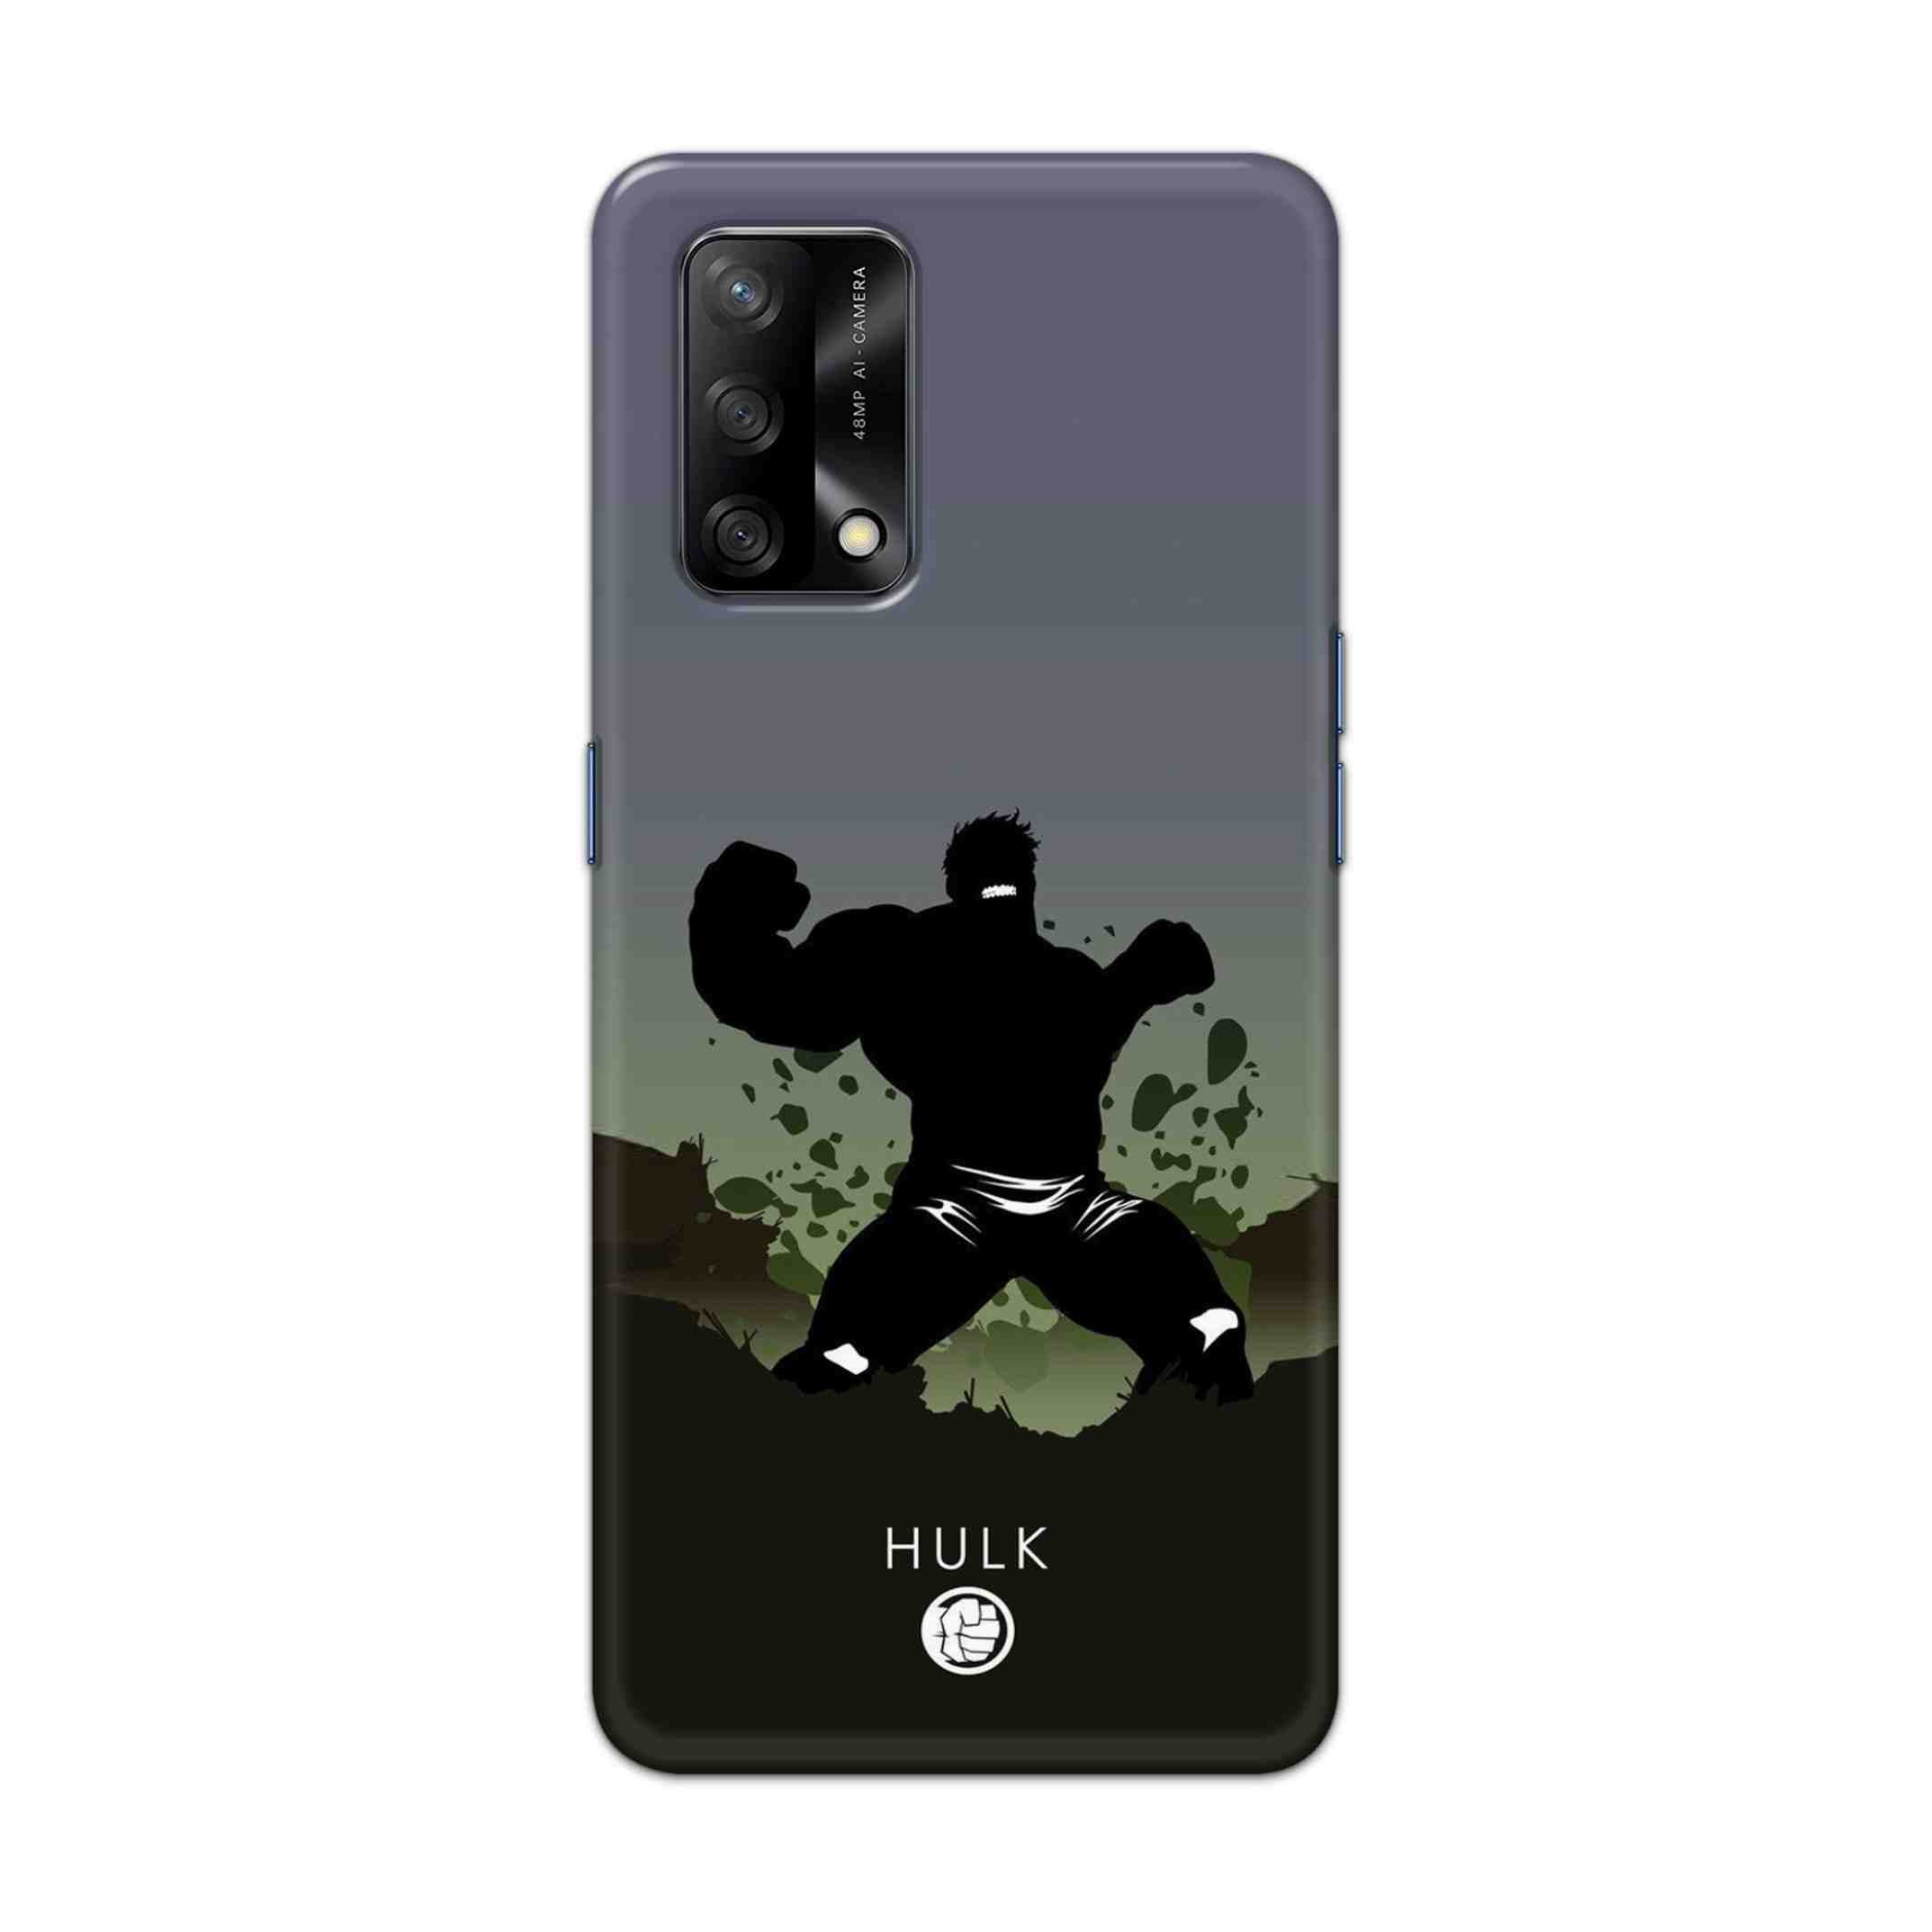 Buy Hulk Drax Hard Back Mobile Phone Case Cover For Oppo F19 Online